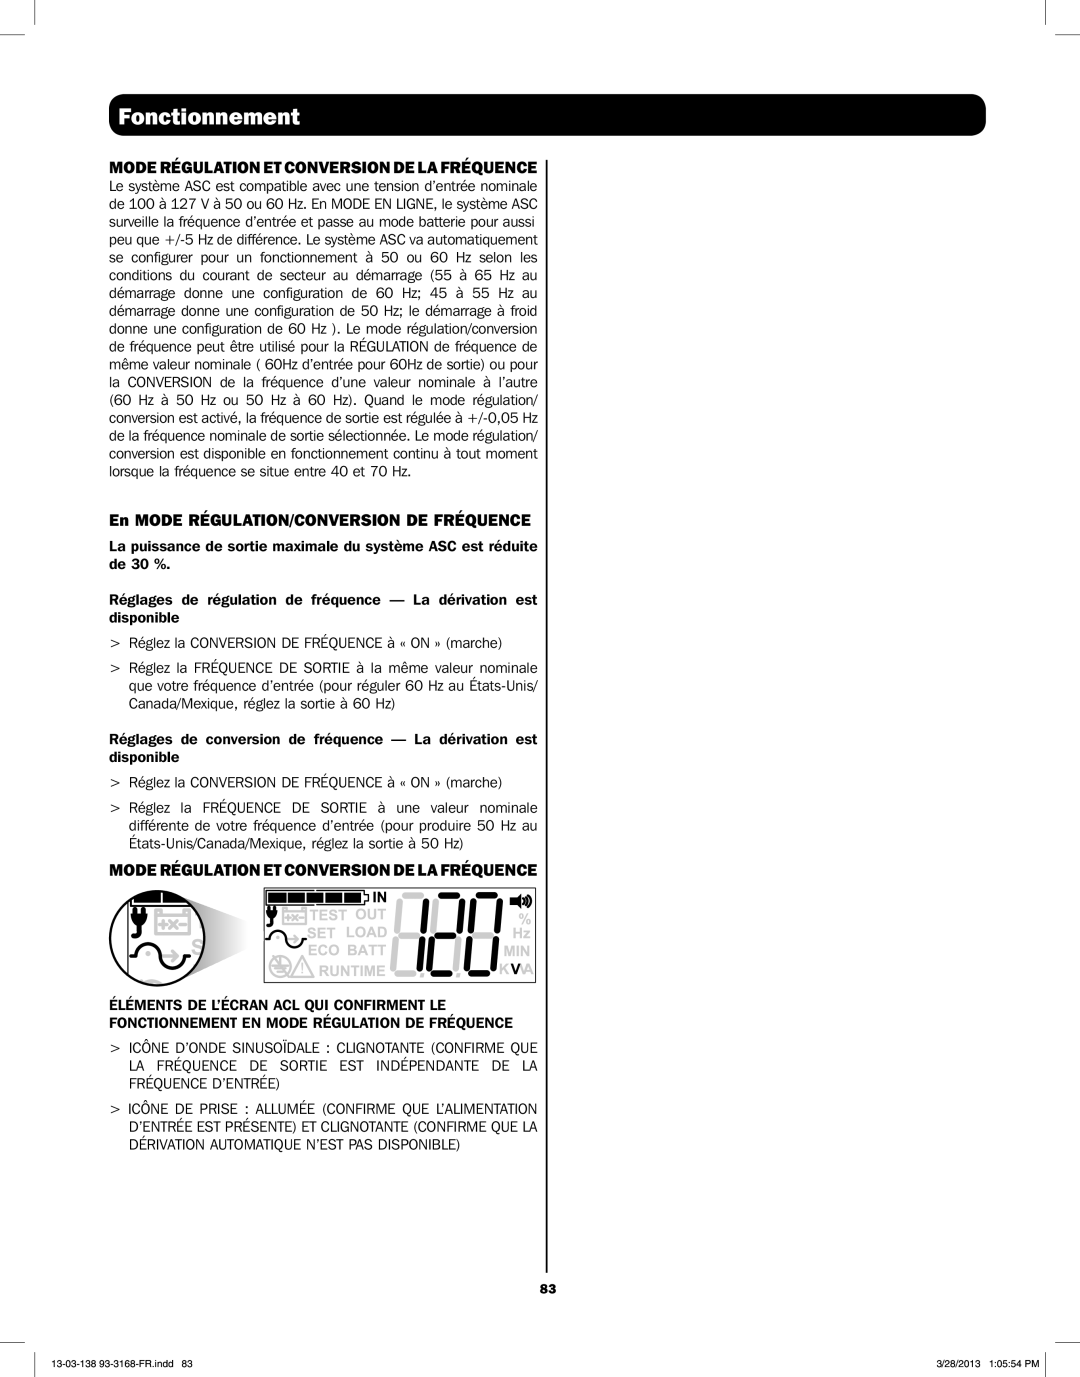 Tripp Lite SU3000XLCD Mode Régulation Et Conversion De La Fréquence, En MODE RÉGULATION/CONVERSION DE FRÉQUENCE 